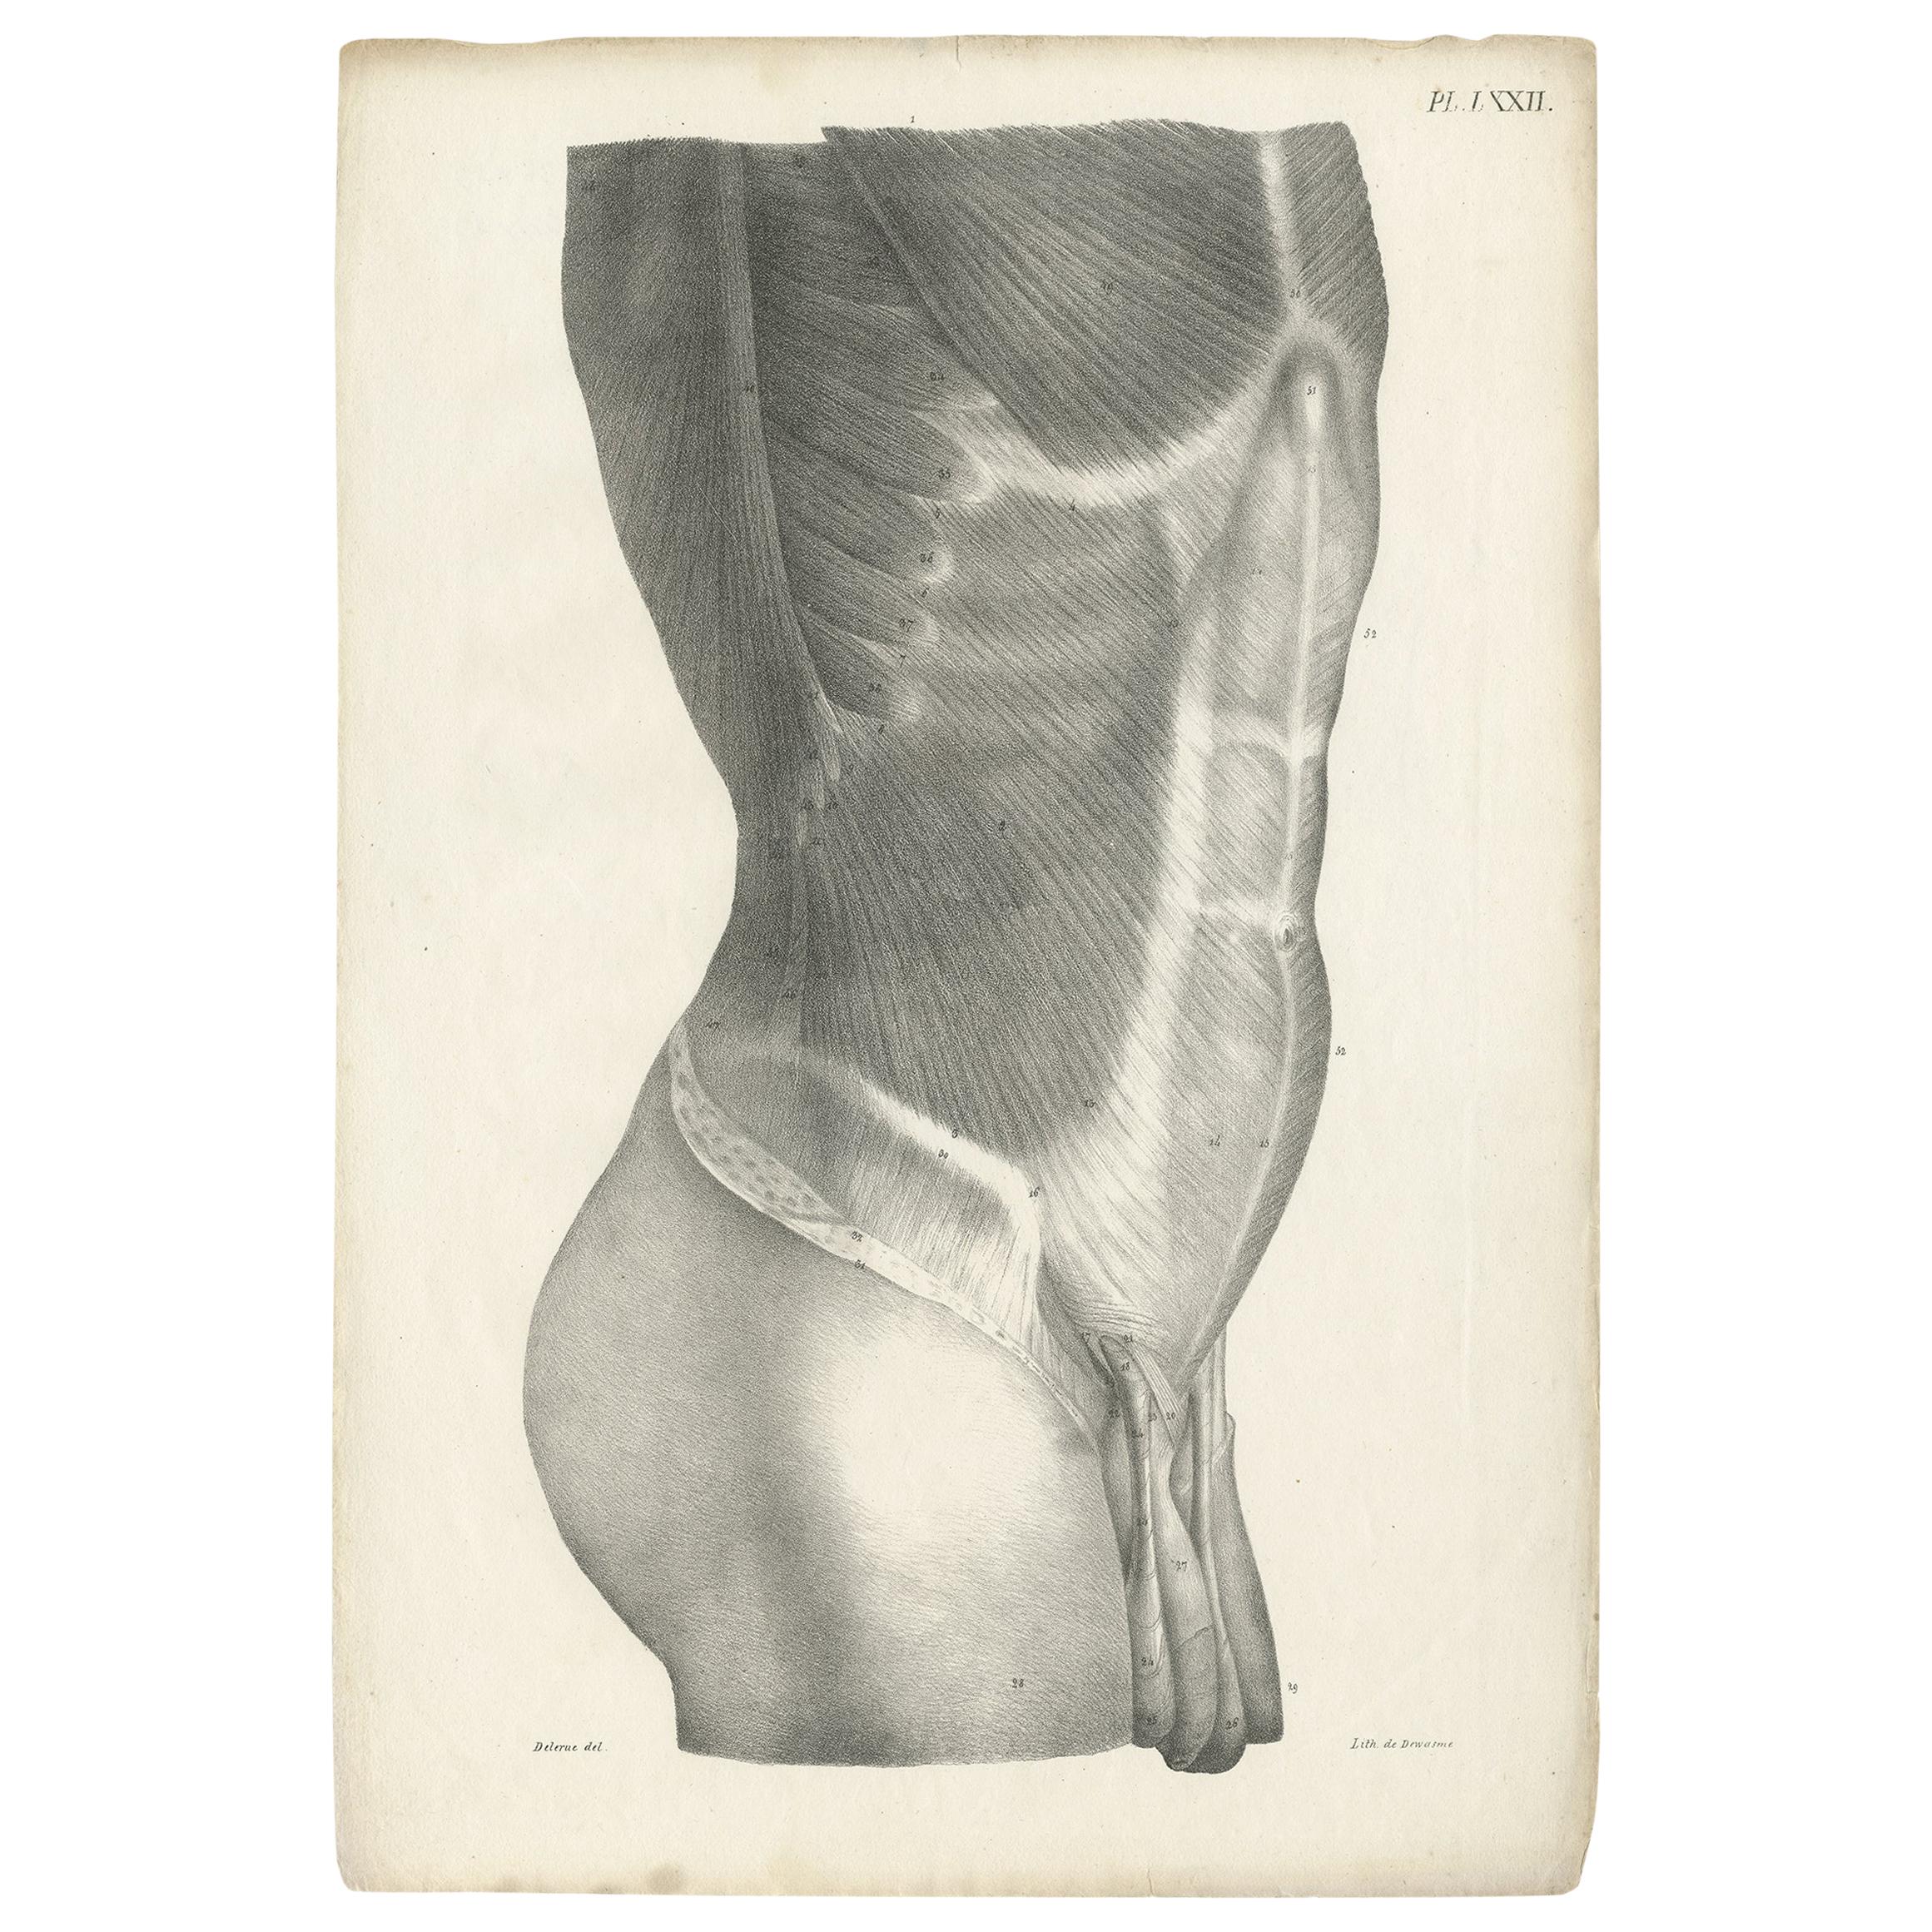 Pl. LXXII Antiker Anatomie / Medizinischer Druck des männlichen Oberkörpers von Cloquet '1821'